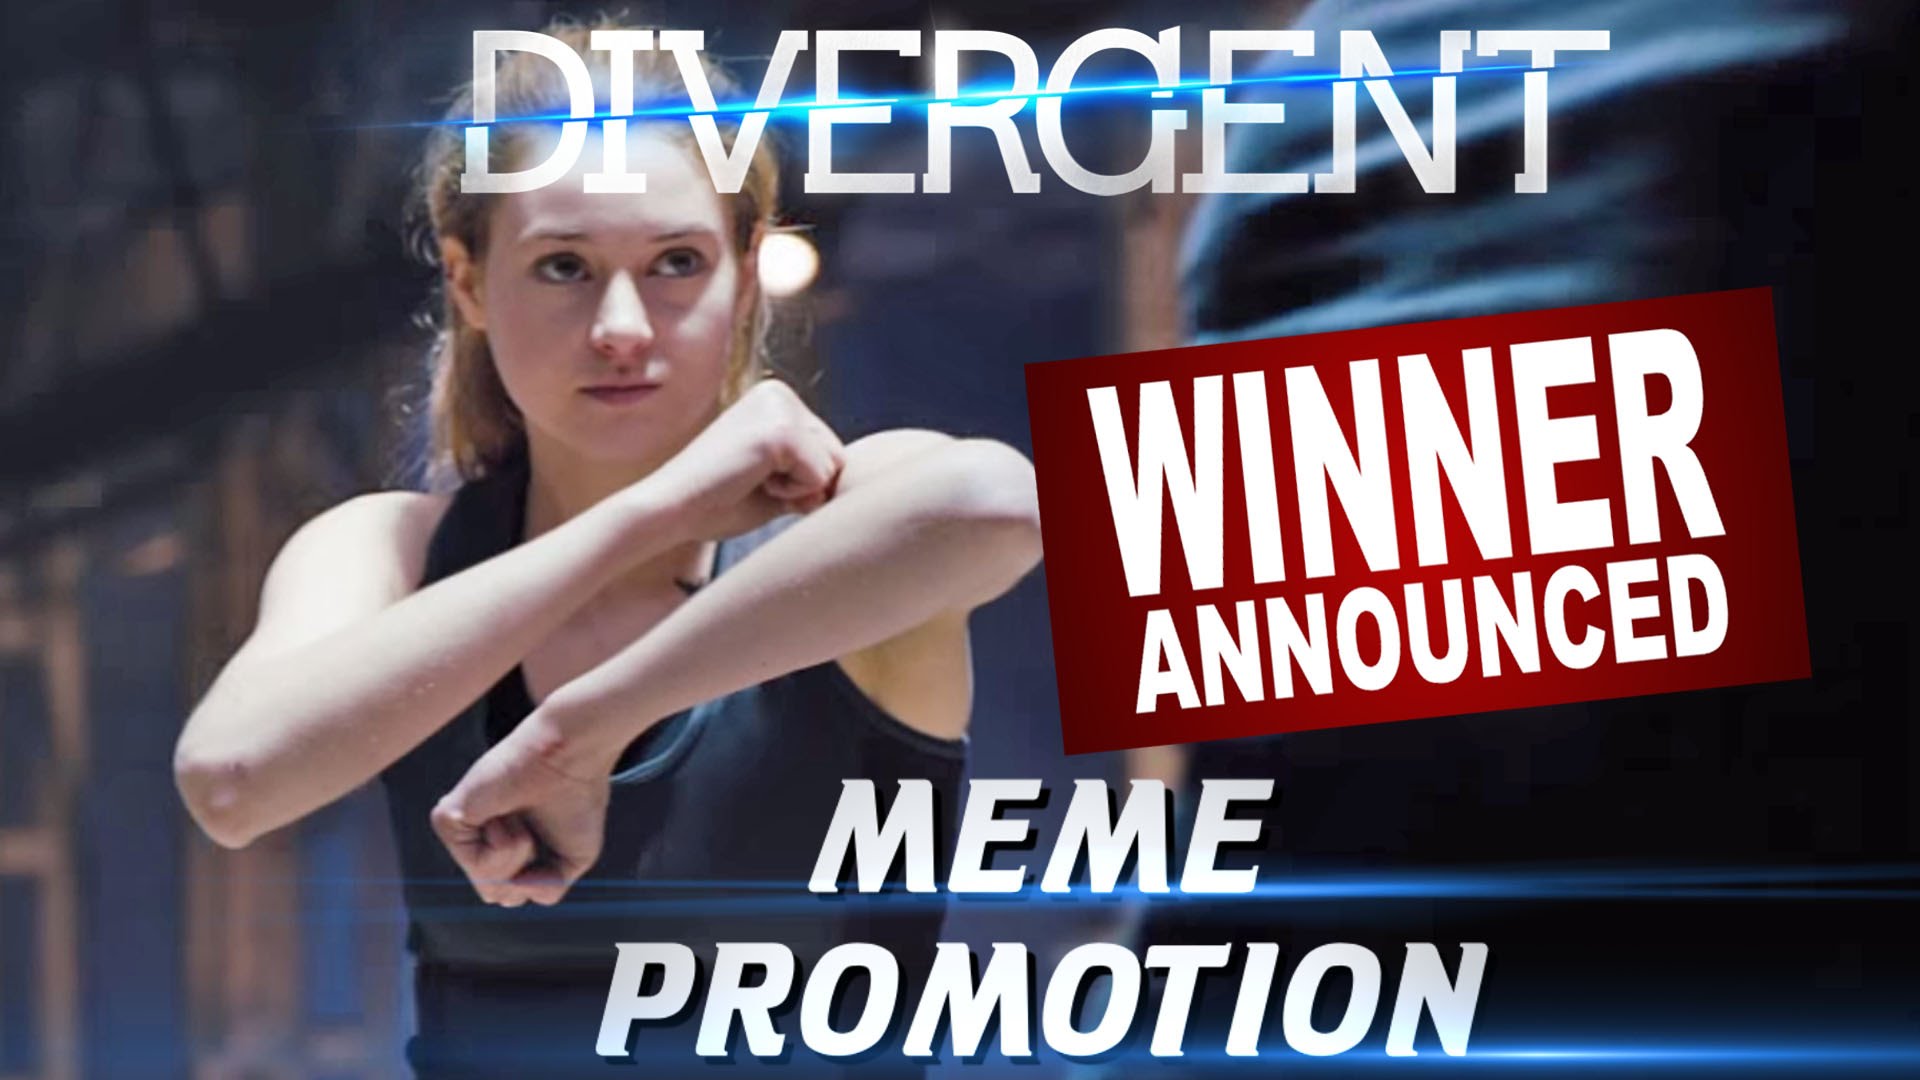 Lionsgate Unlocked Divergent Meme Contest Winners Announced